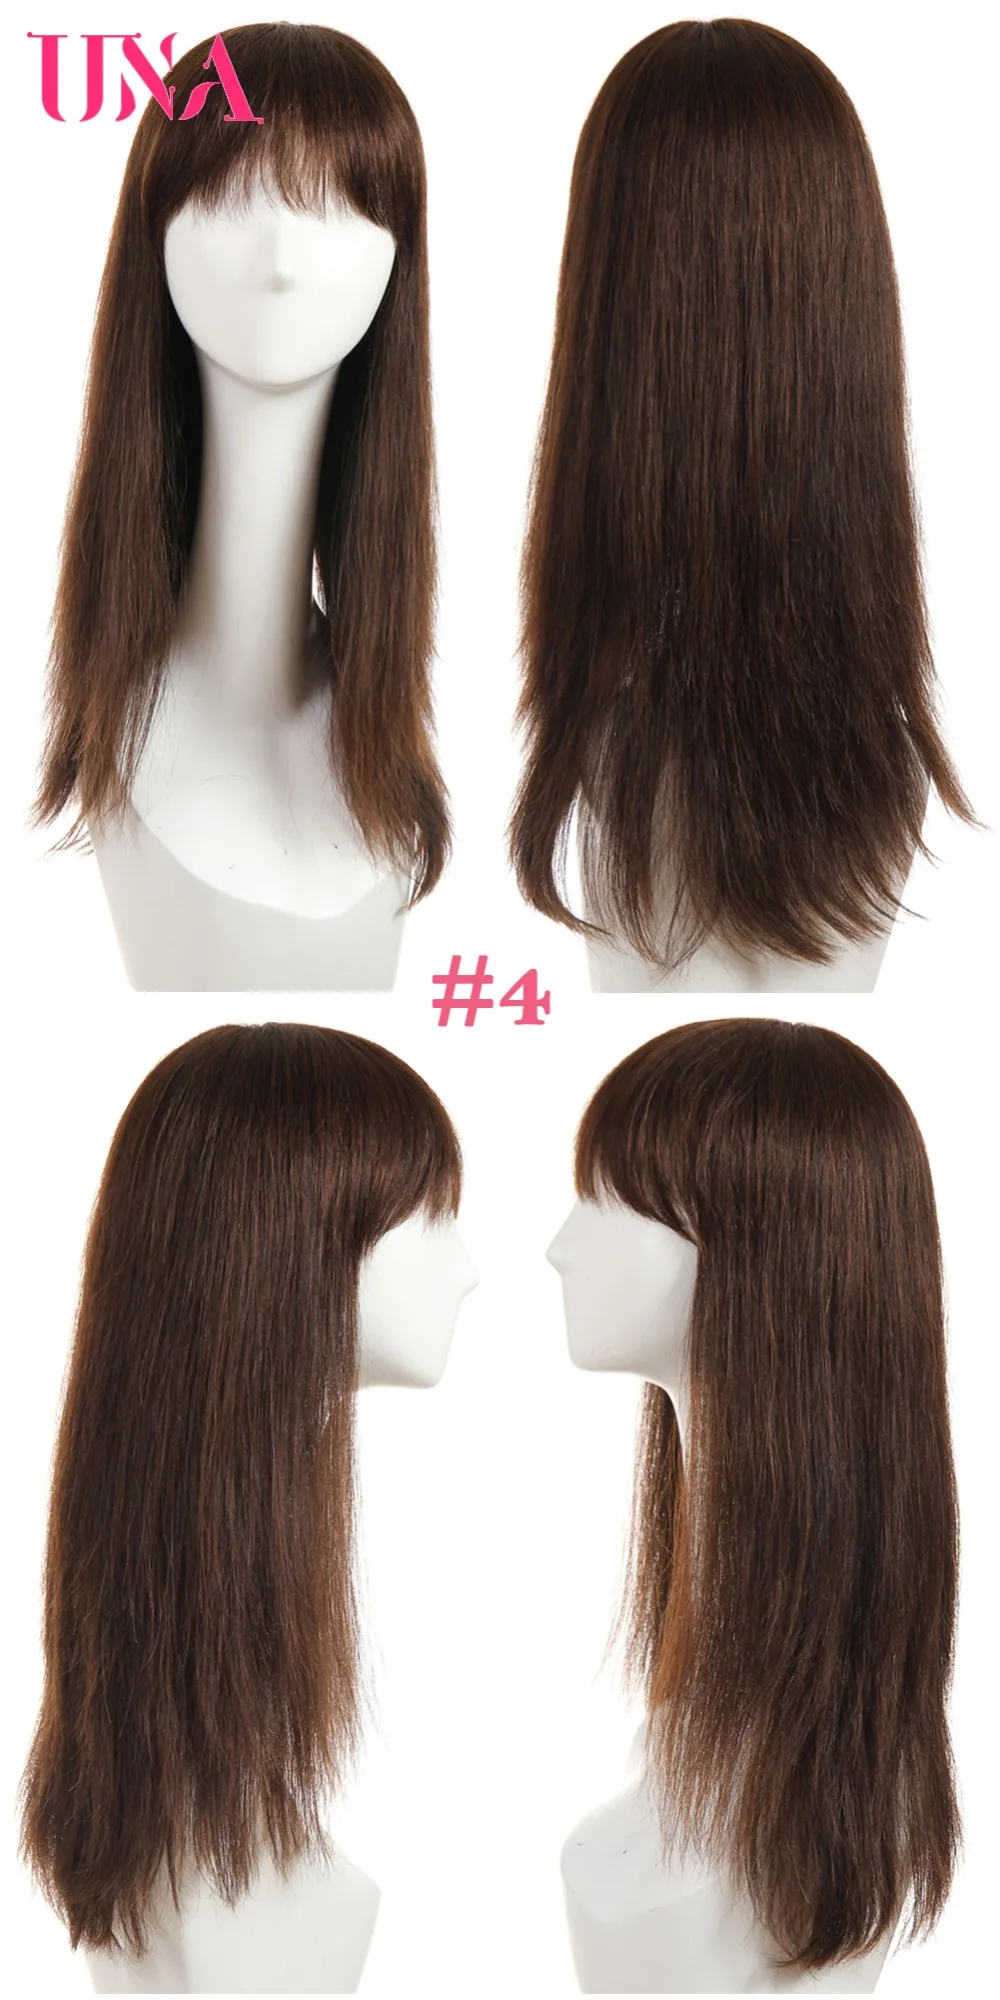 UNA человеческие волосы парики для женщин длинные прямые человеческие волосы 150% плотность индийские прямые человеческие волосы парики не